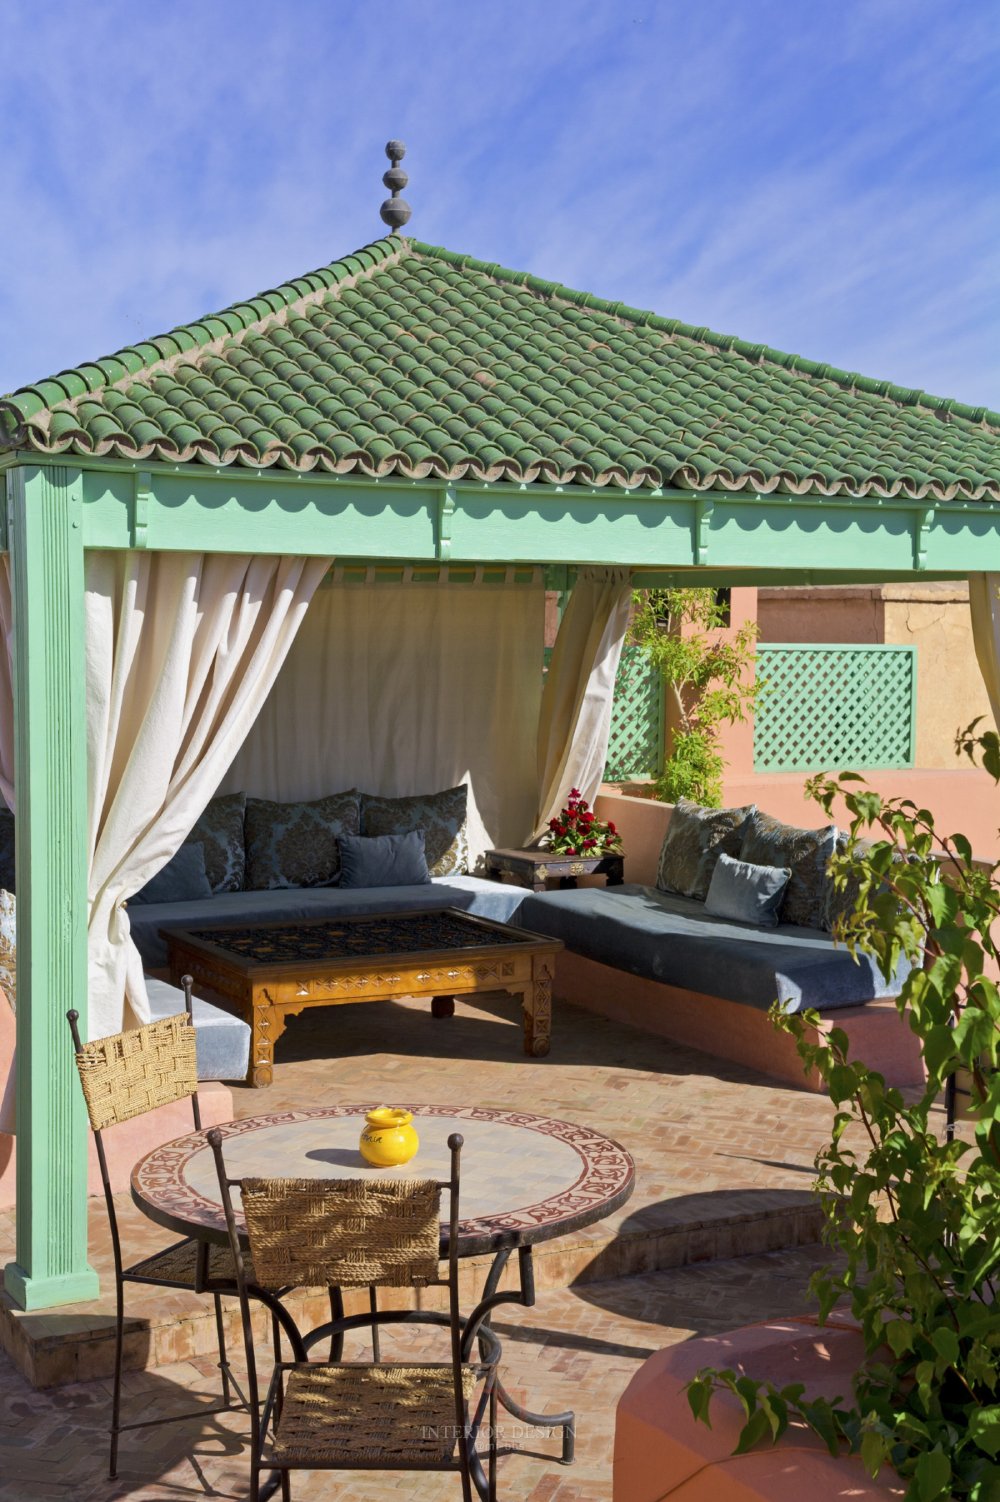 摩洛哥马拉喀什悦椿度假酒店 Angsana Riads Collection Morocco_33551225-H1-Zaouia_PG_1010_Roof_Terrace_Global_1771.jpg